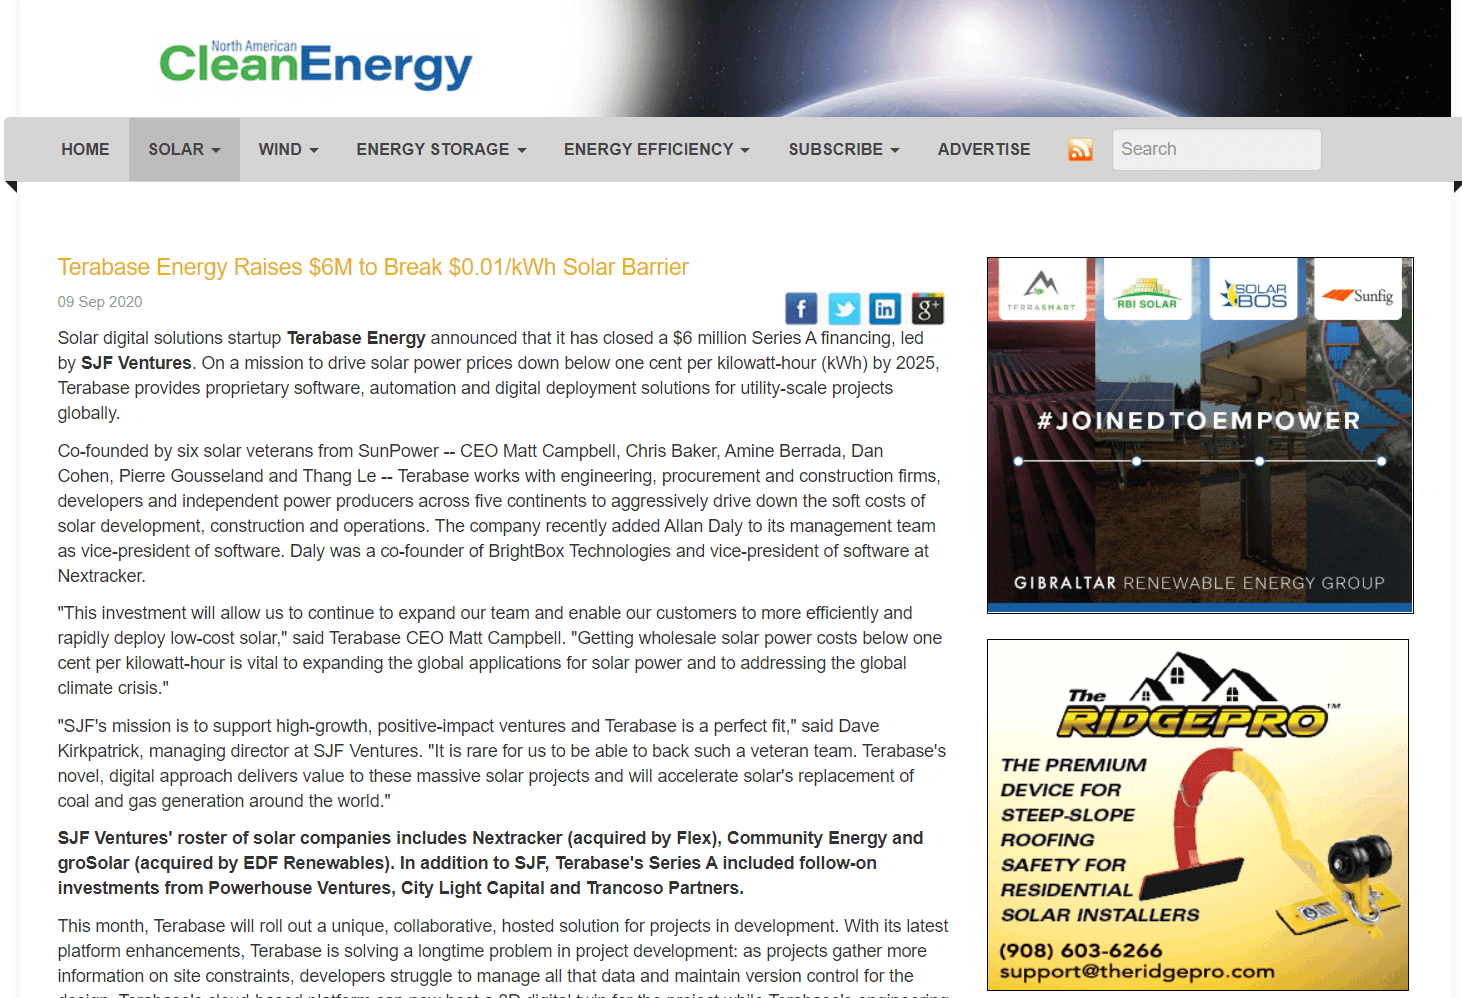 Terabase Energy Raises $6M to Break $0.01/kWh Solar Barrier